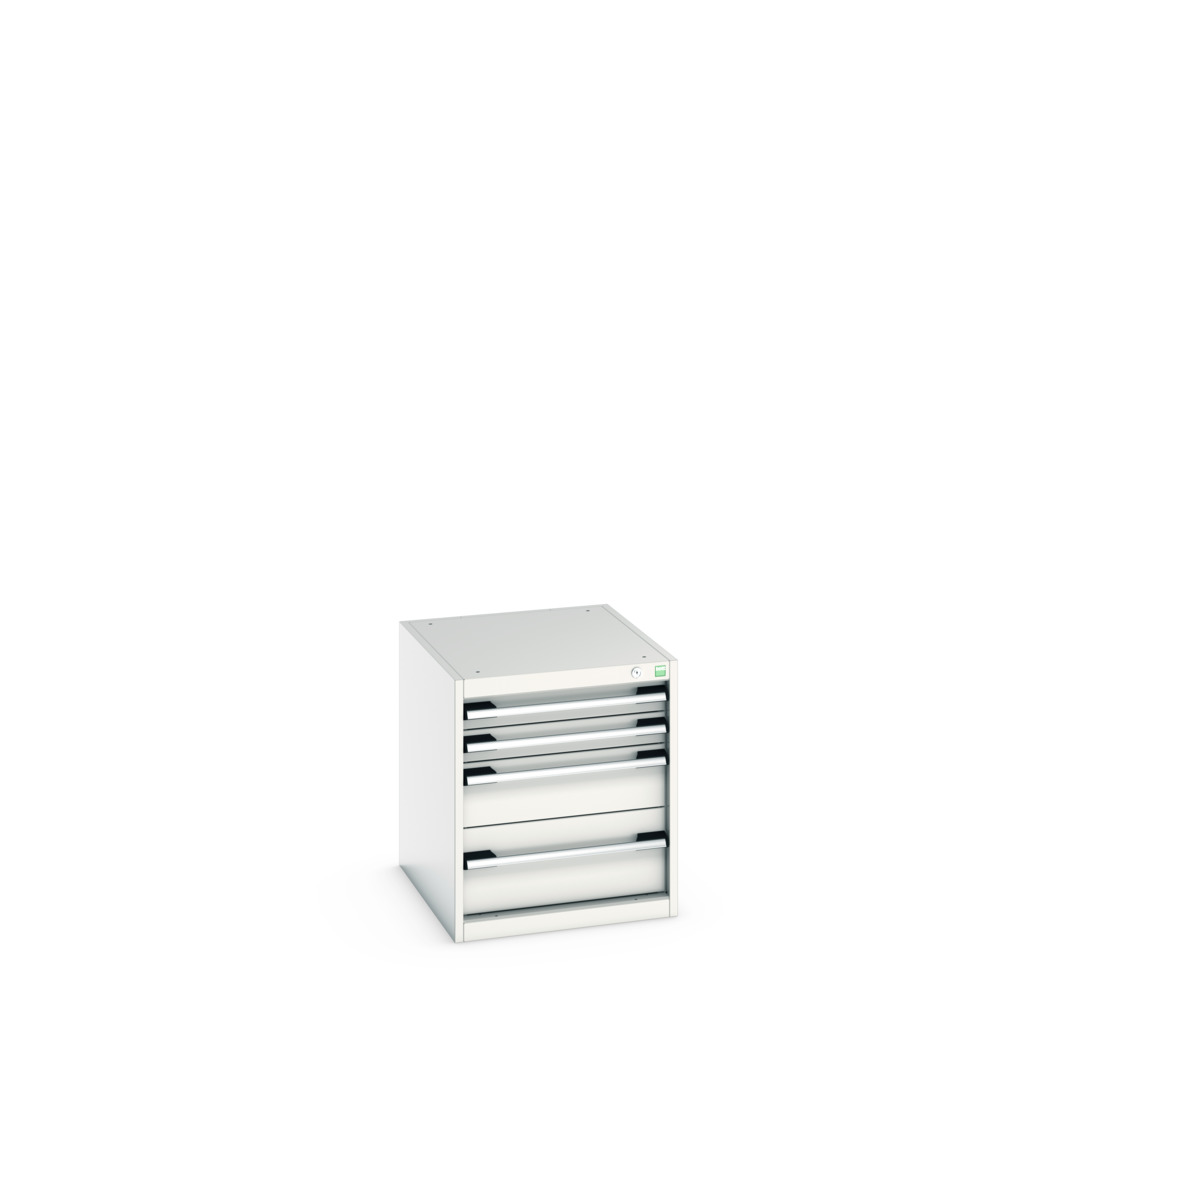 40018017.16V - cubio drawer cabinet